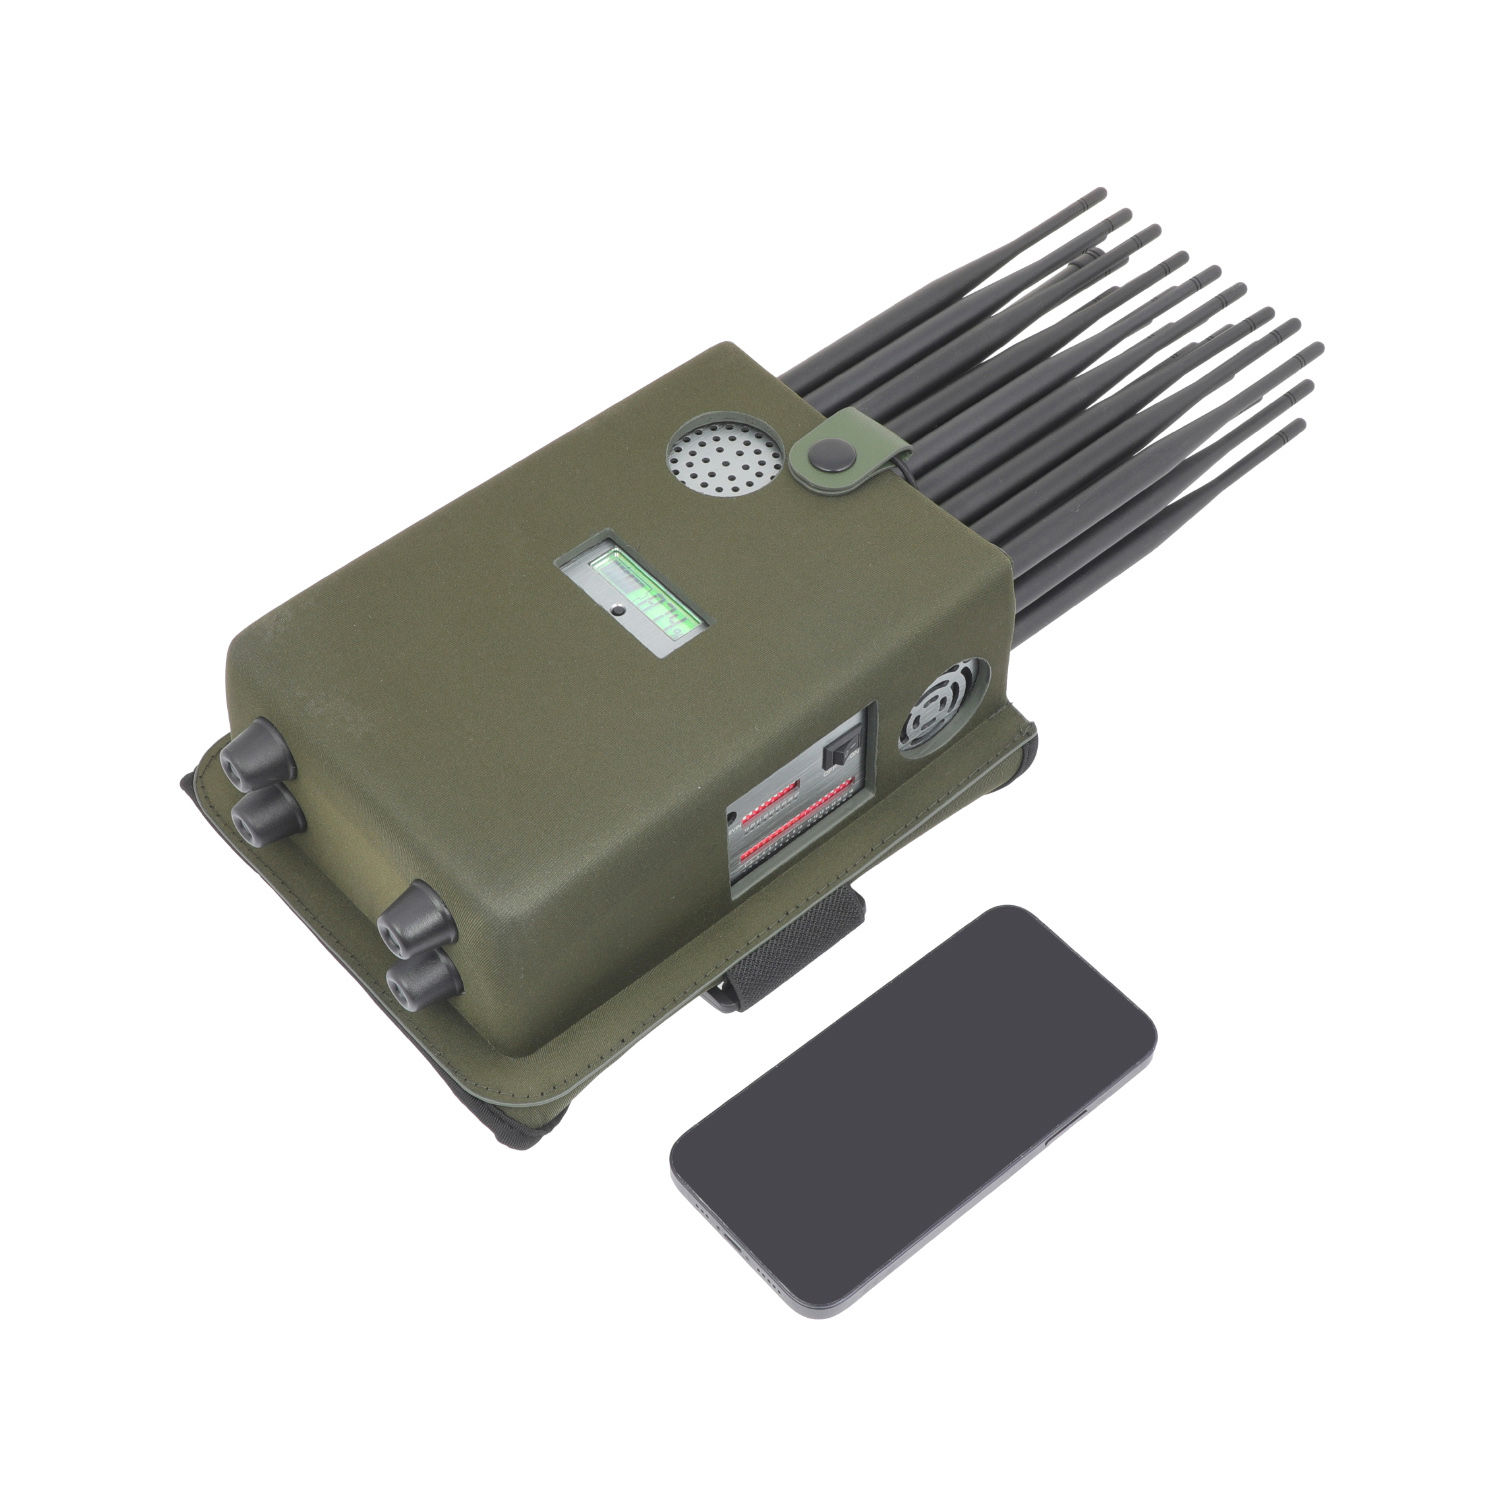 Портативные 27 антенн, сигнальные помехи, щиты MERS, GPS Lojack, VHF UHF Wifi2.4g Wifi5.8g, Cdma DCS Gsm2g, 3g, 4g, 5g, изолятор мобильного сигнала